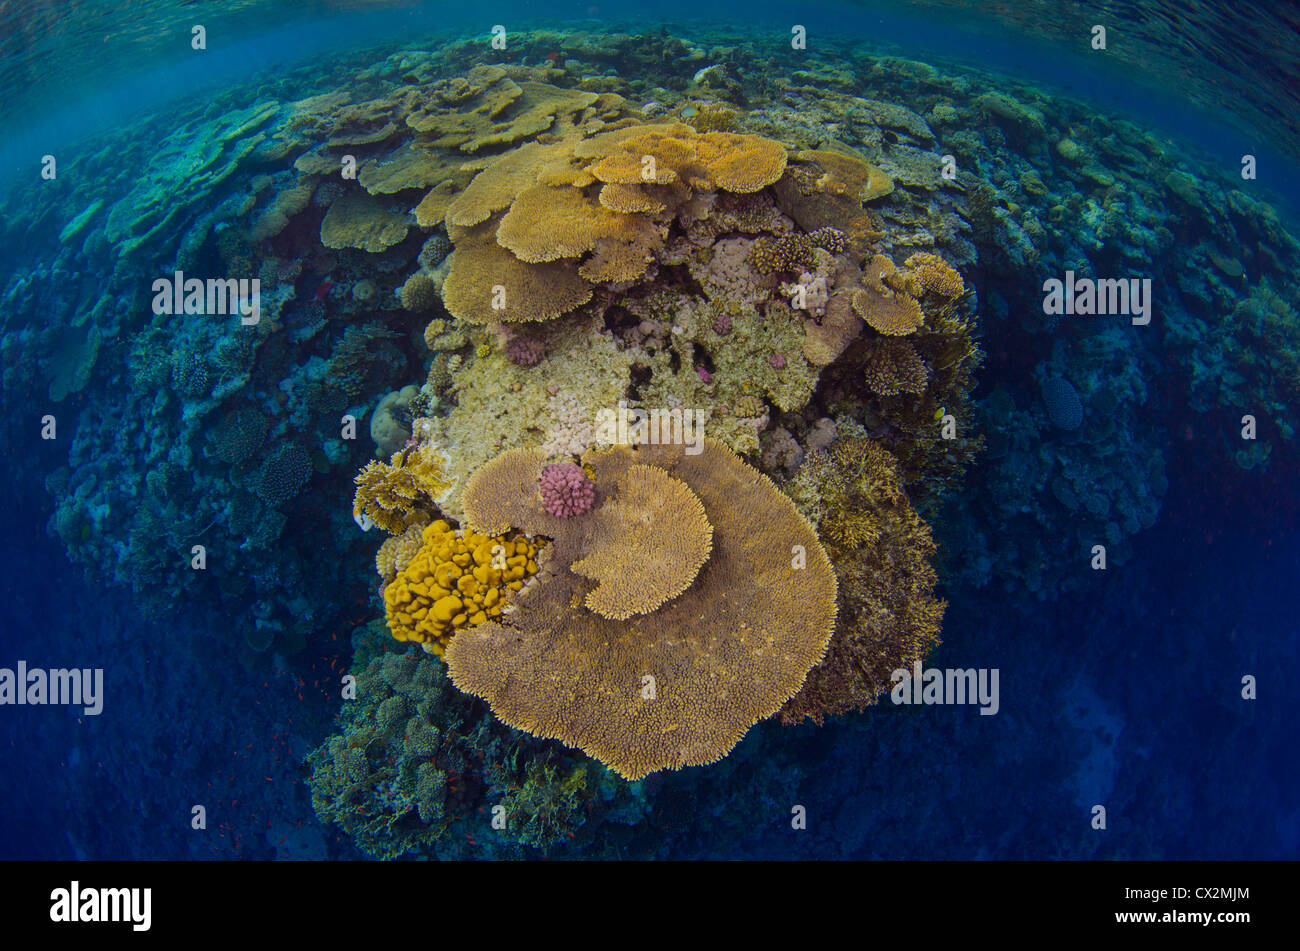 Coral Reef, Mar Rosso, Egitto, oceano mare, acqua poco profonda, l'acqua è blu e coralli duri, corallo, colorato, colore, subacquea, Coral reef. Foto Stock